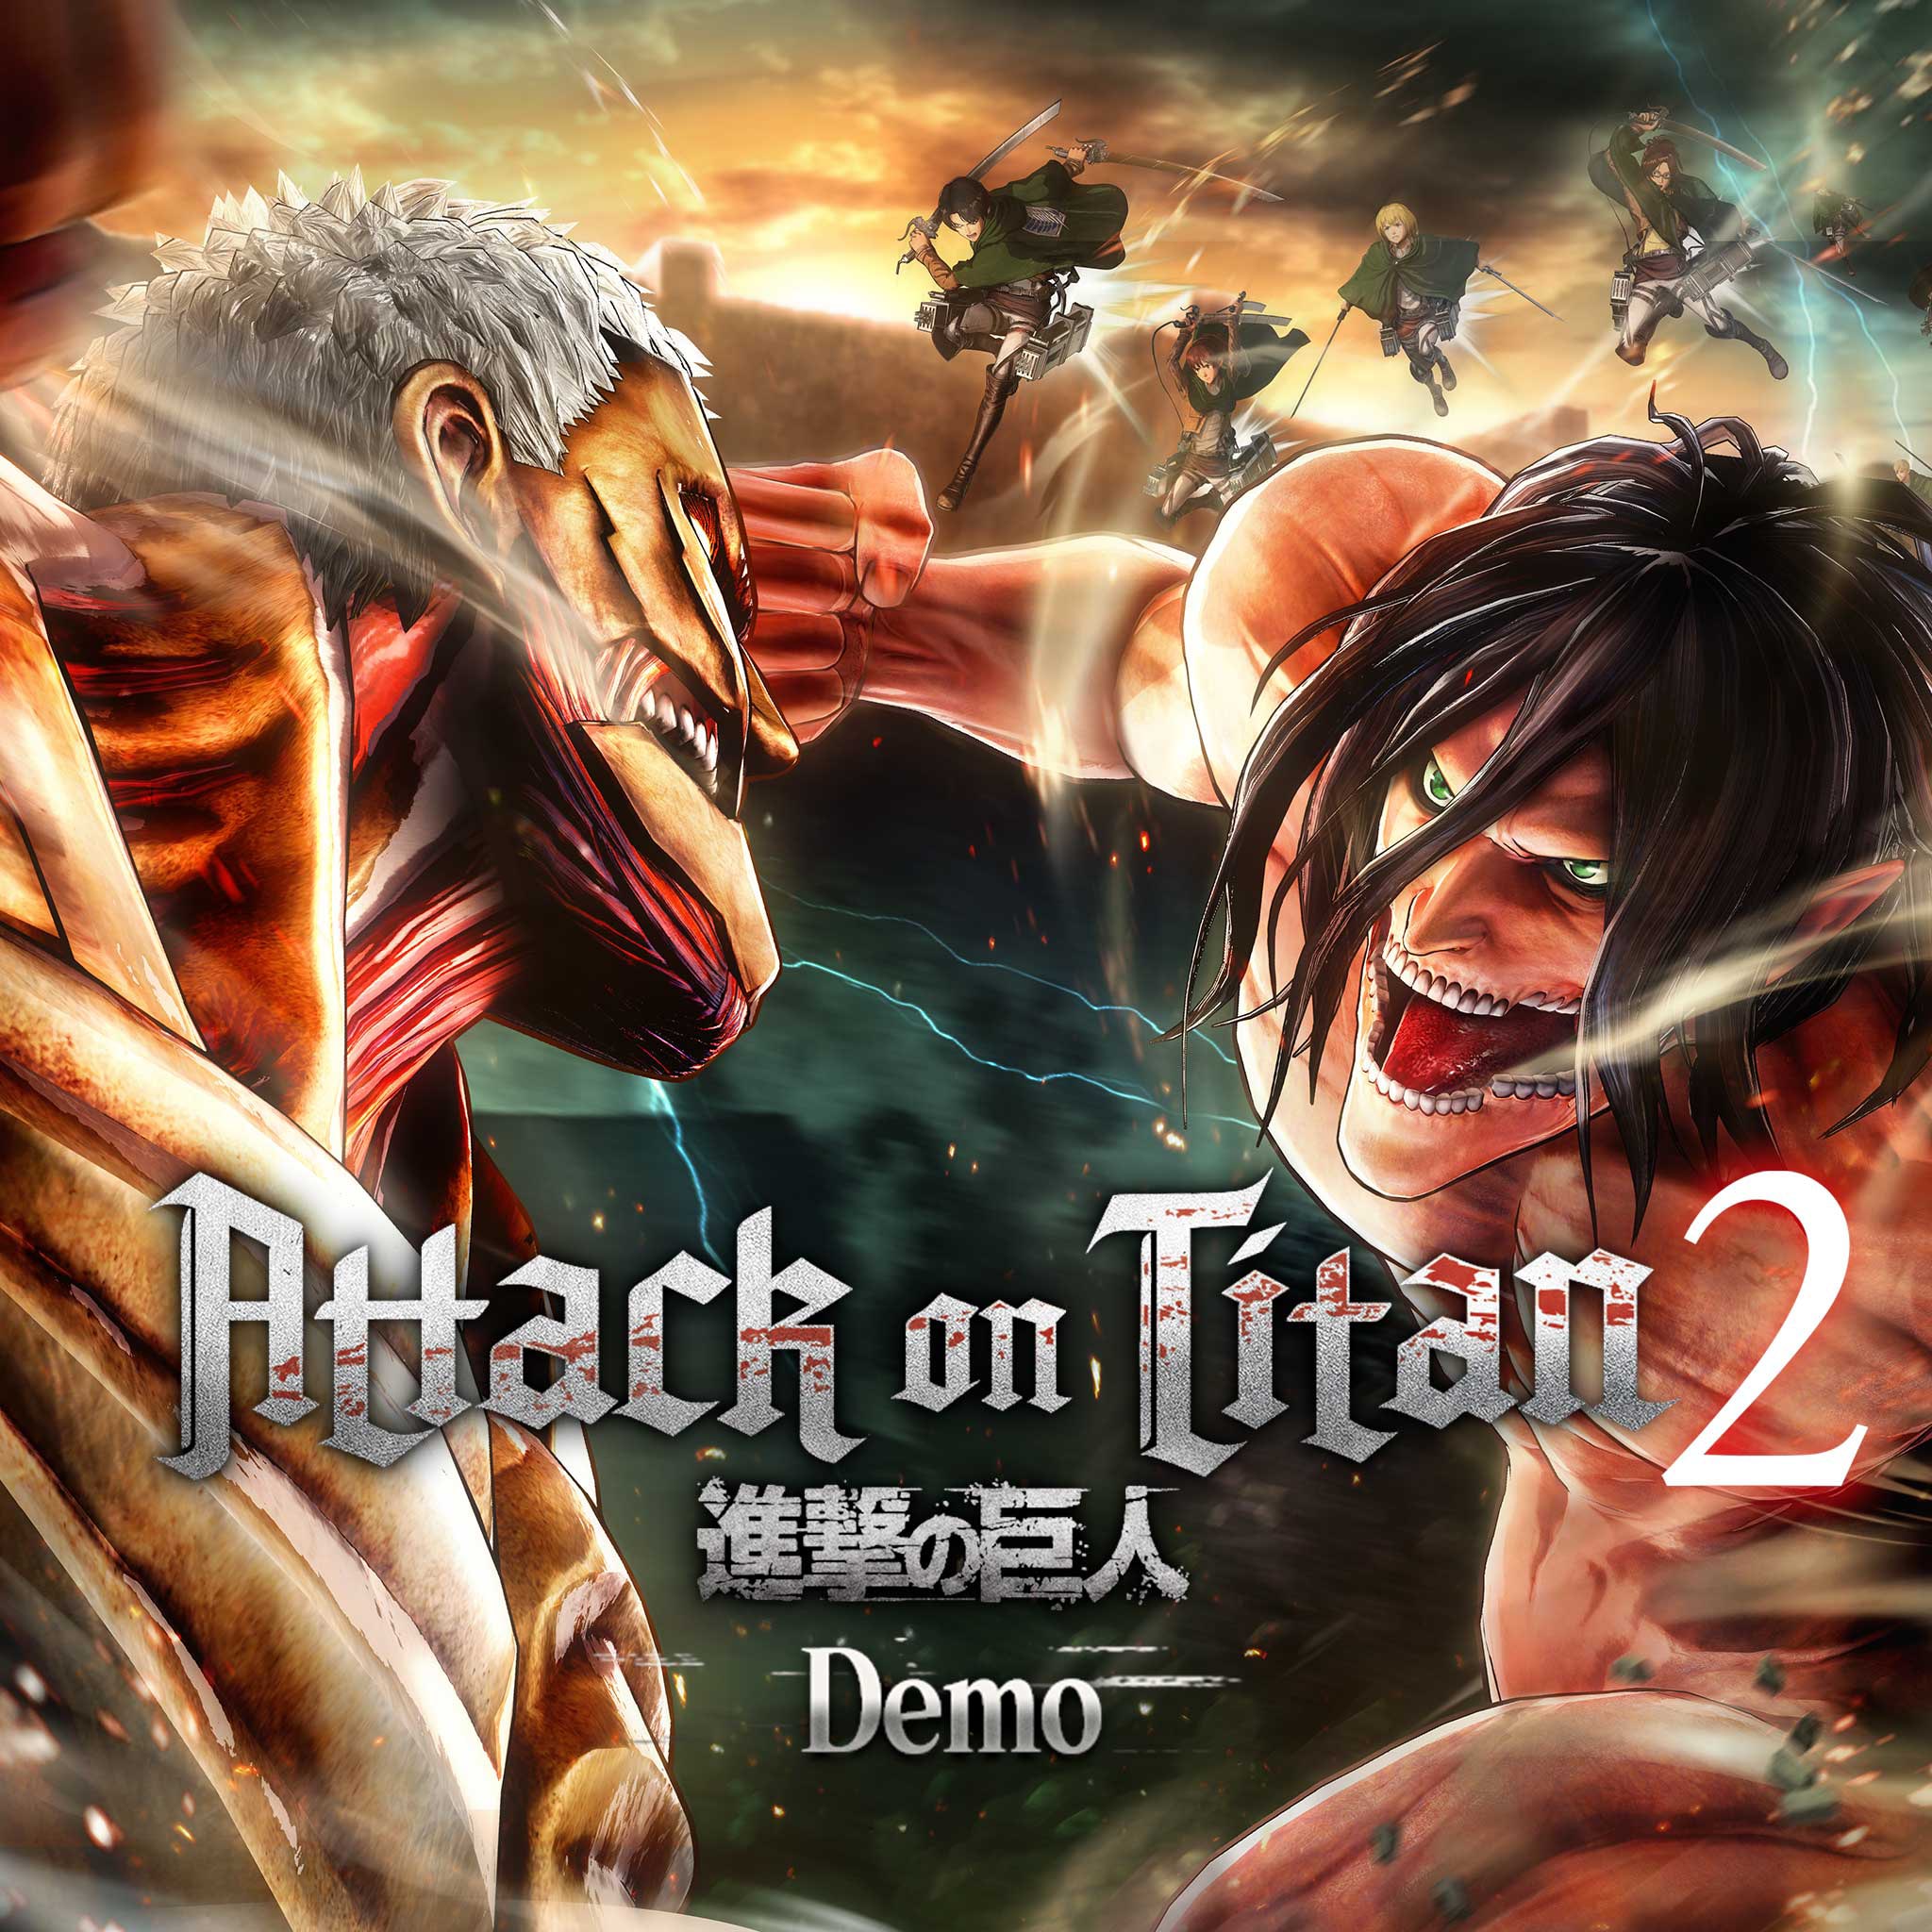 Attack on Titan 2 Demo